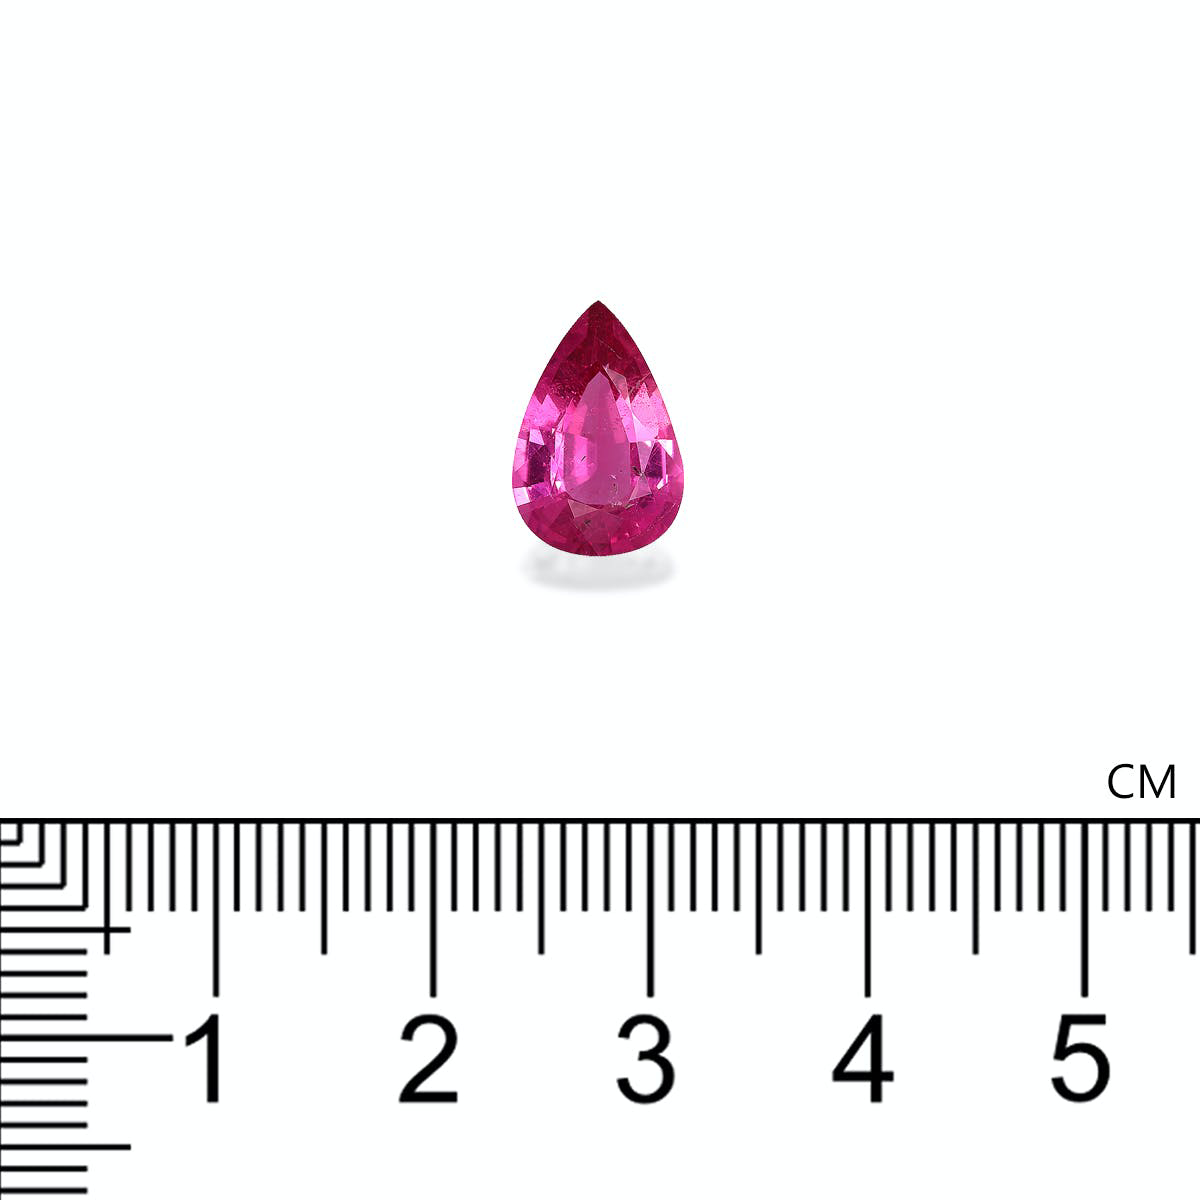 Picture of Fuscia Pink Rubellite Tourmaline 2.41ct (RL1241)